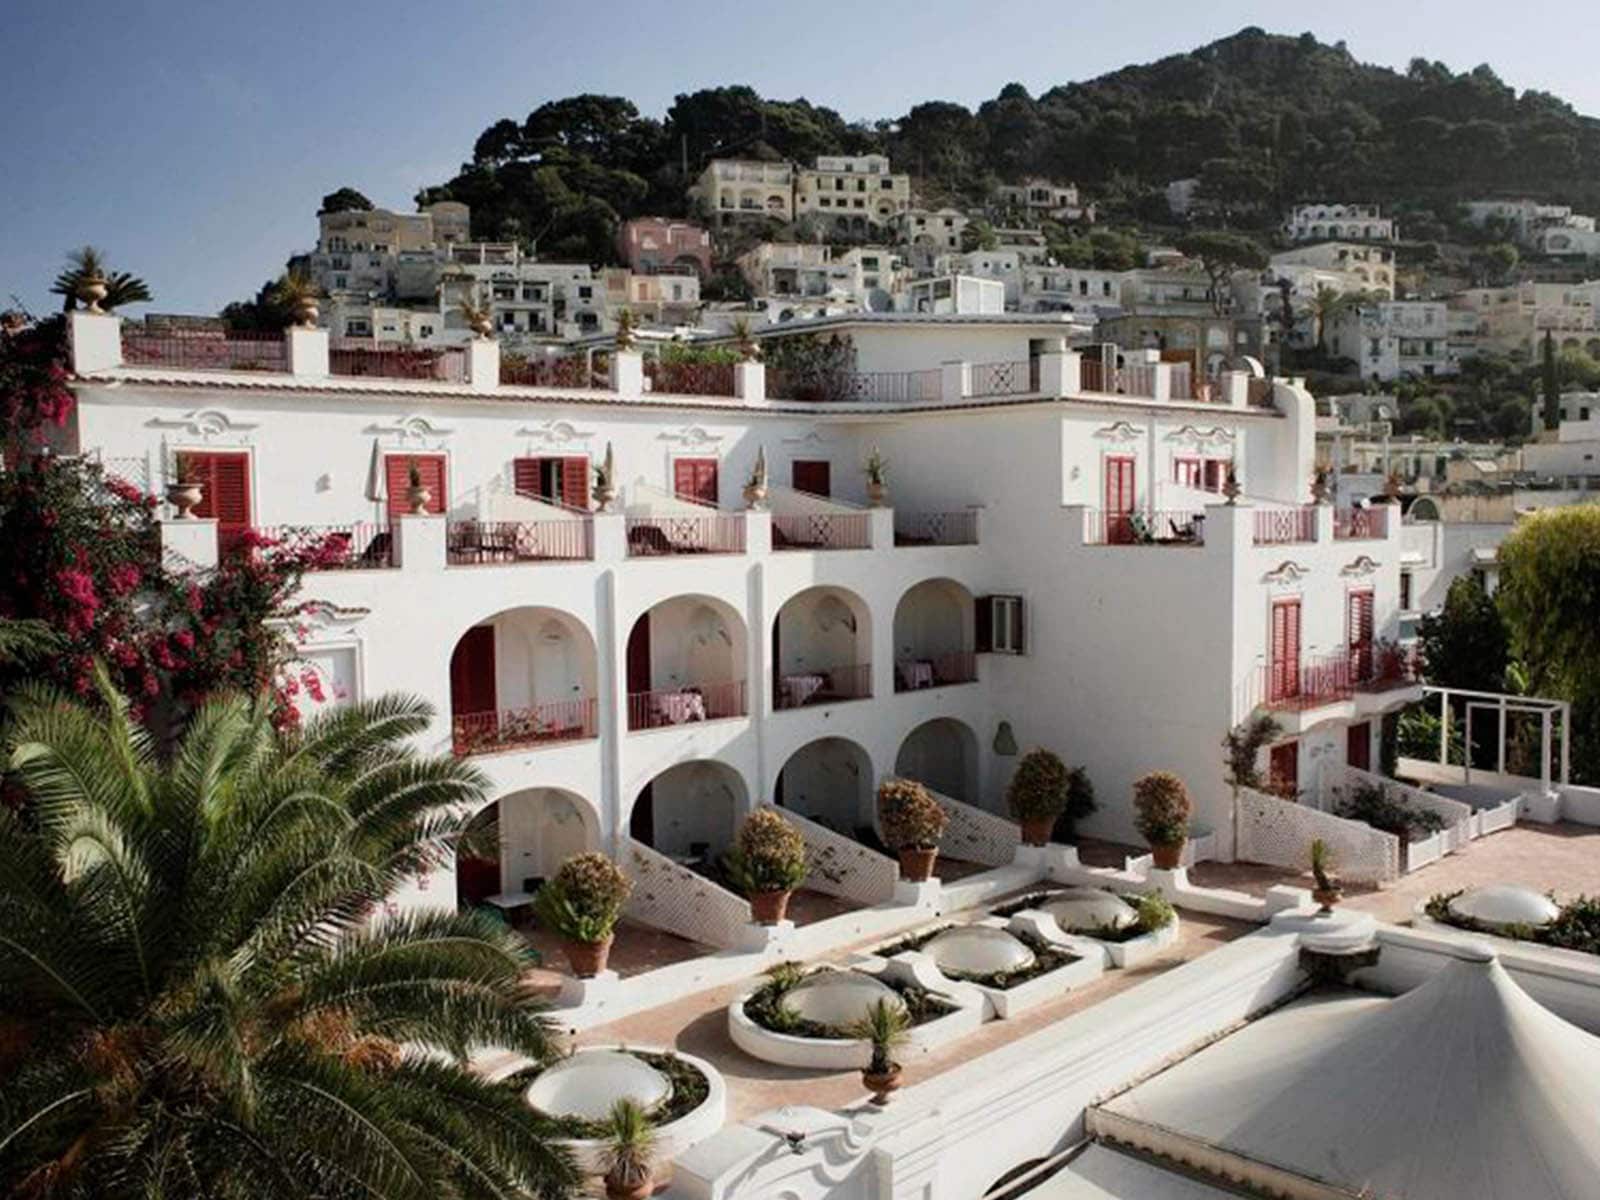 Añadimos a nuestra lista de deseos el Hotel La Palma en Capri